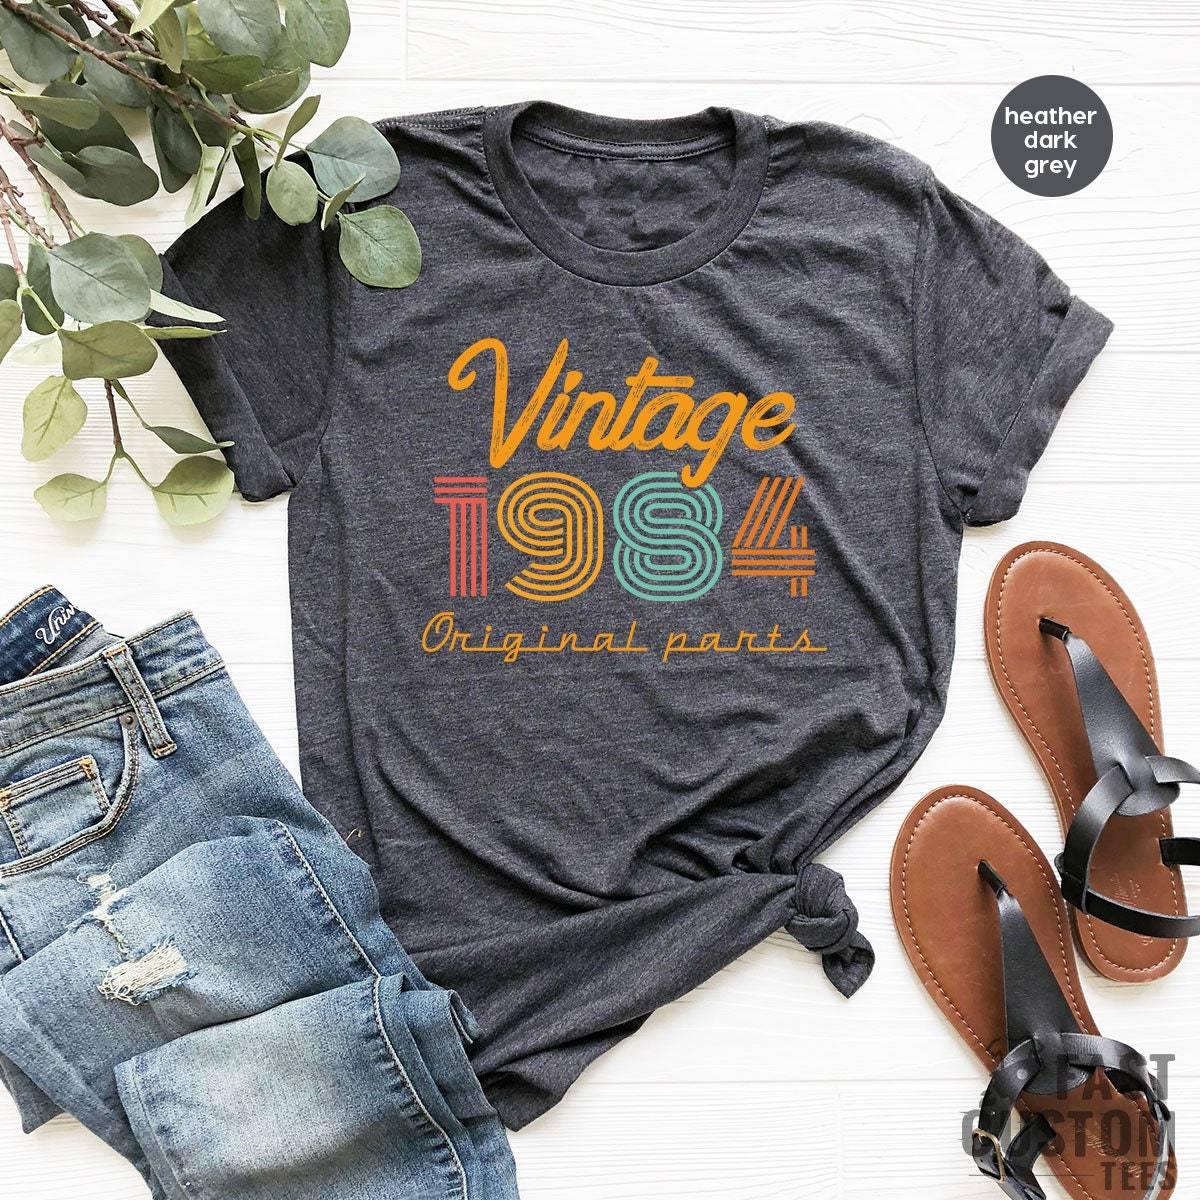 37th Birthday Shirt, Vintage T Shirt, Vintage 1984 Shirt, 37th Birthday Gift For Women, 37th Birthday Shirt Men, Retro Shirt, Vintage Shirts - Fastdeliverytees.com